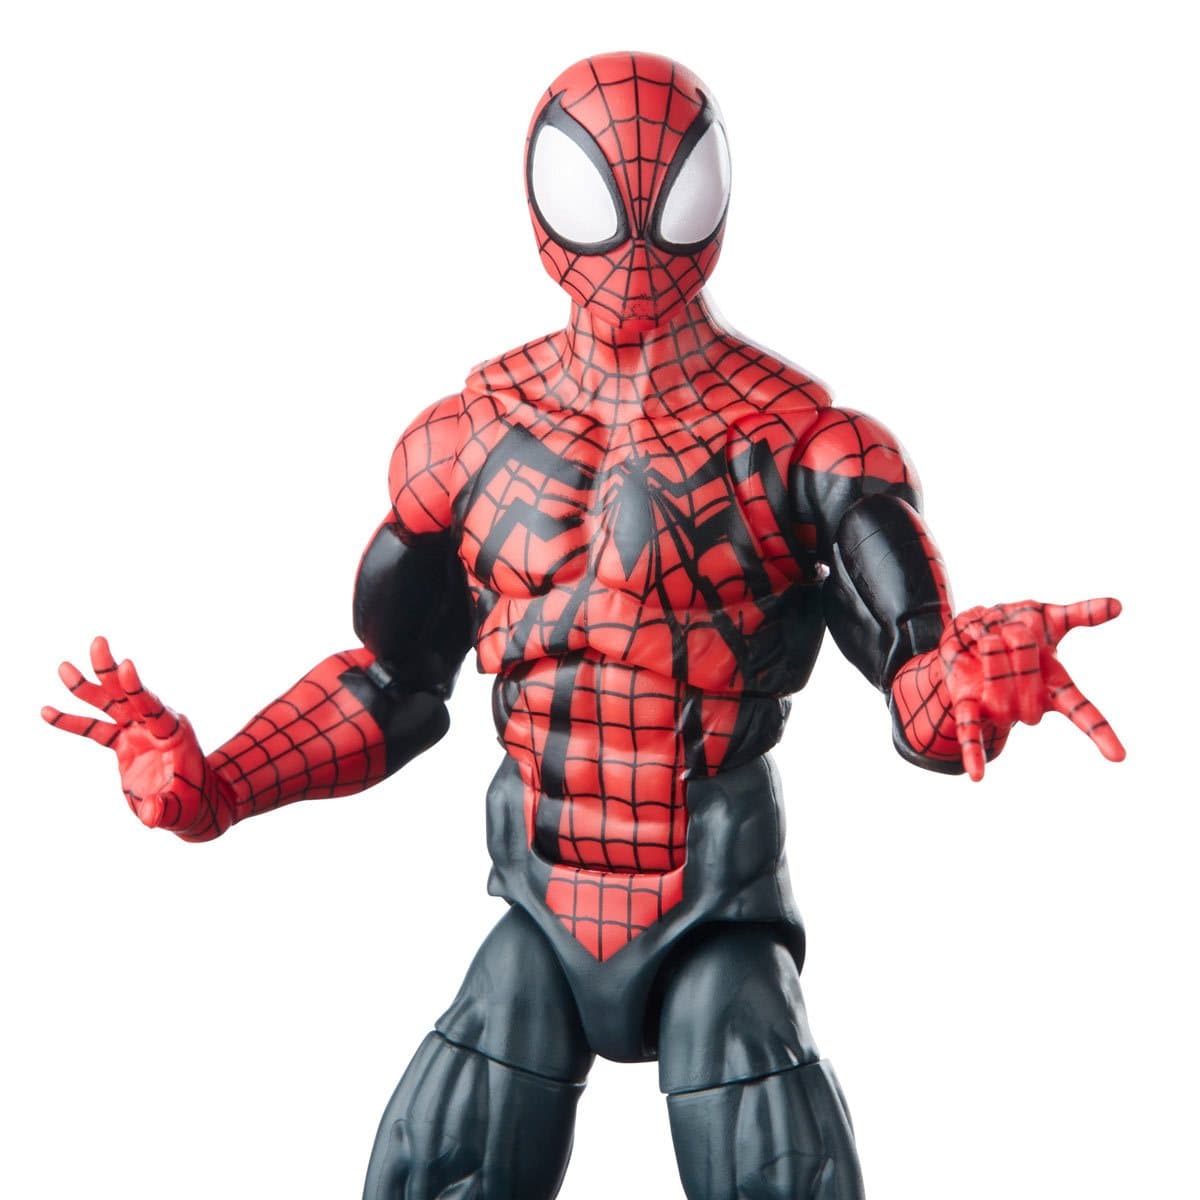 Spider-Man Retro Marvel Legends Ben Reilly Spider-Man 6-Inch Action Figure.